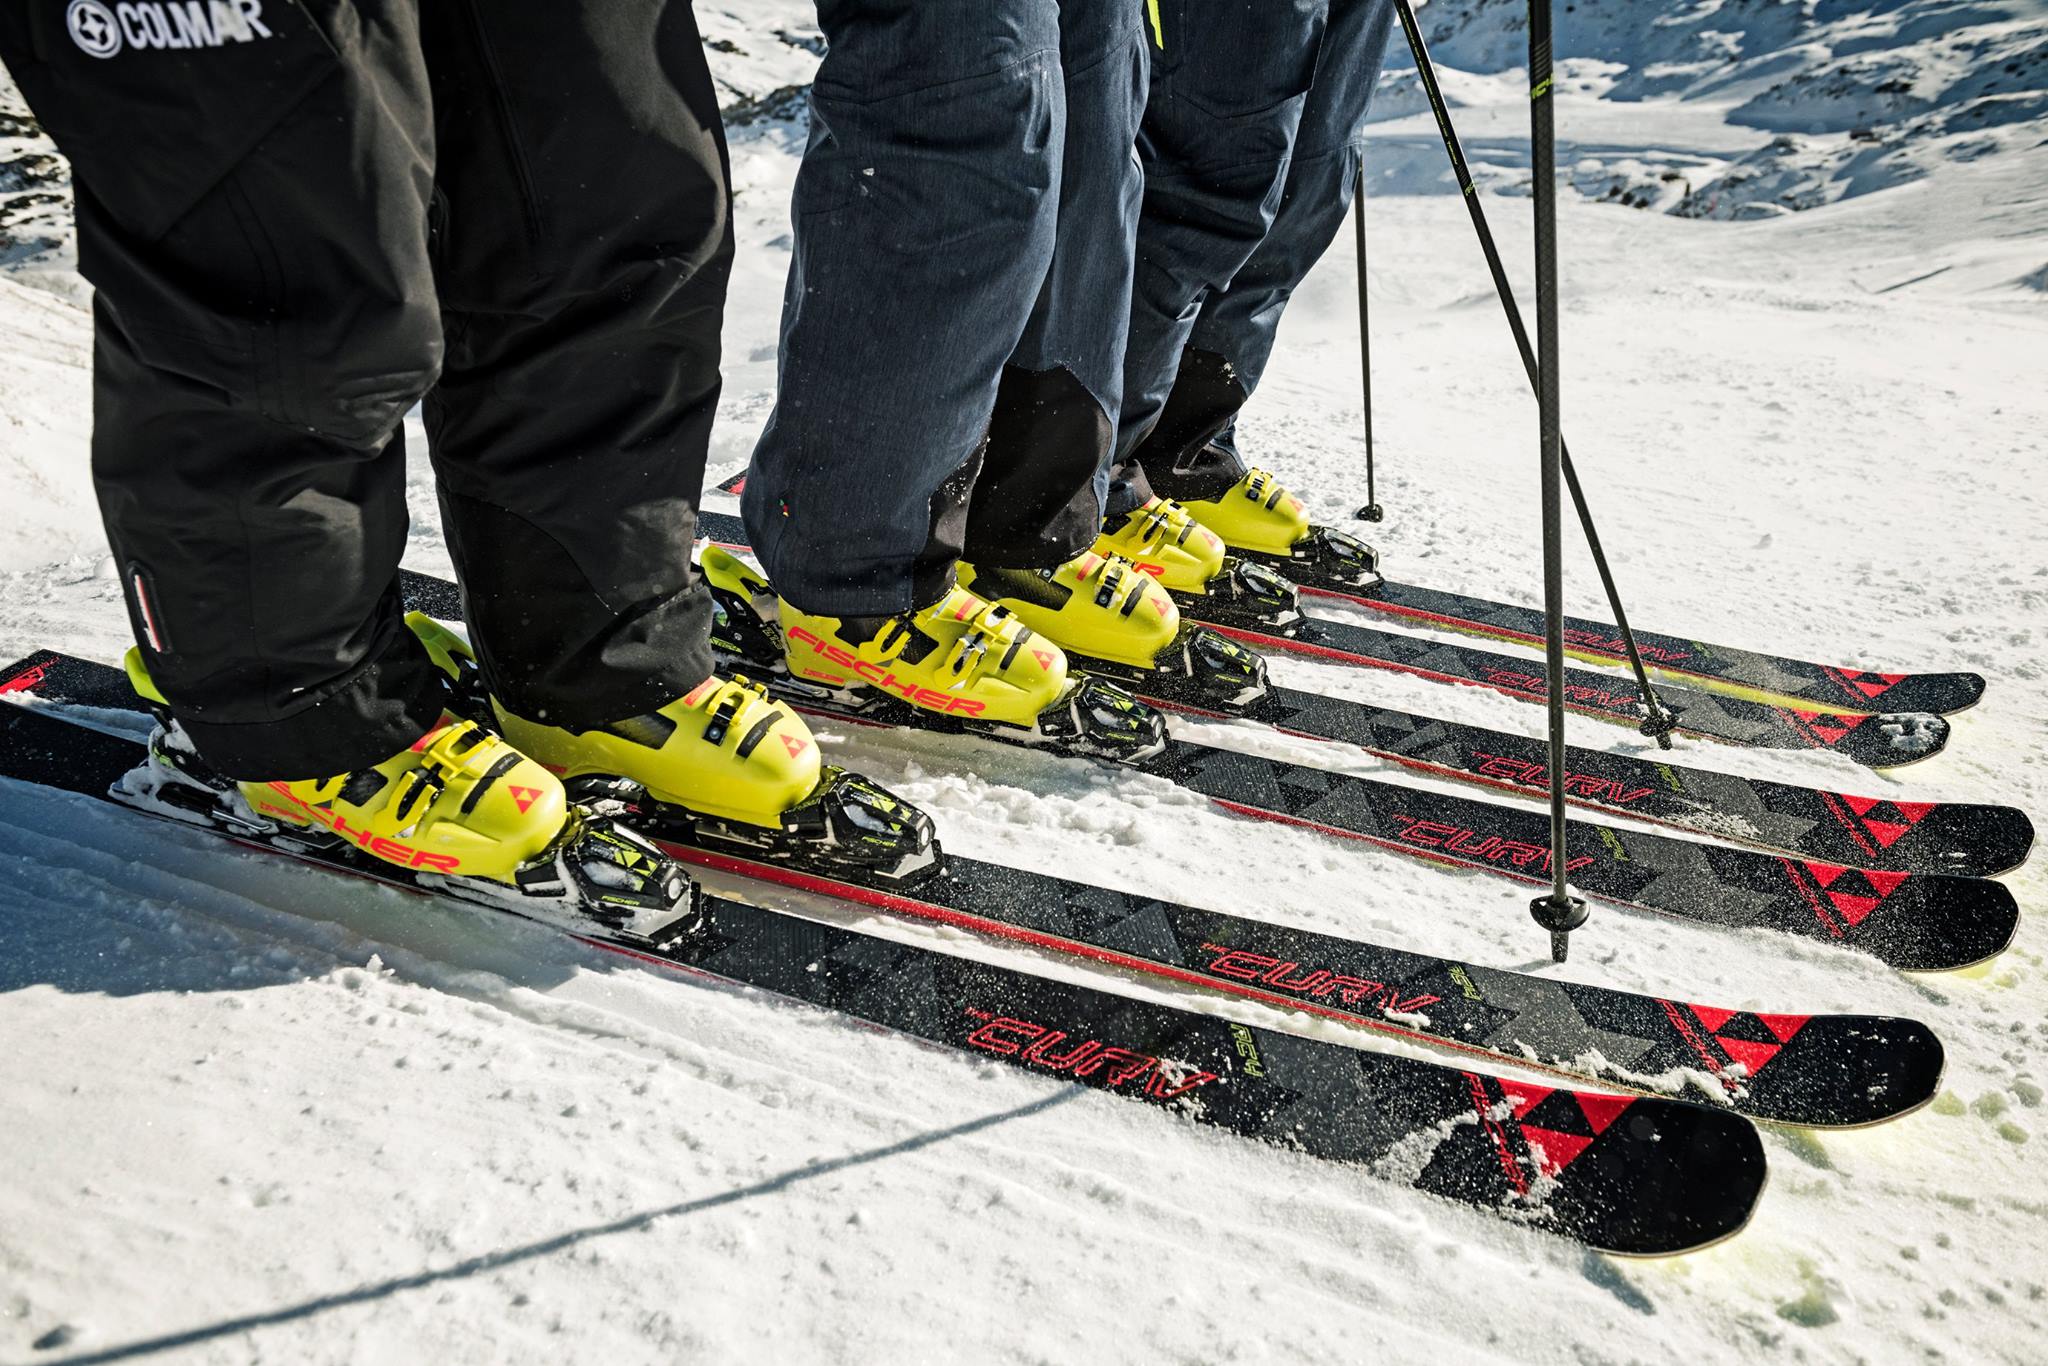 Купить лыжи с ботинками взрослые. Ботинки для горных лыж. Горнолыжные лыжи и ботинки. Горные лыжи. Инвентарь горнолыжника.